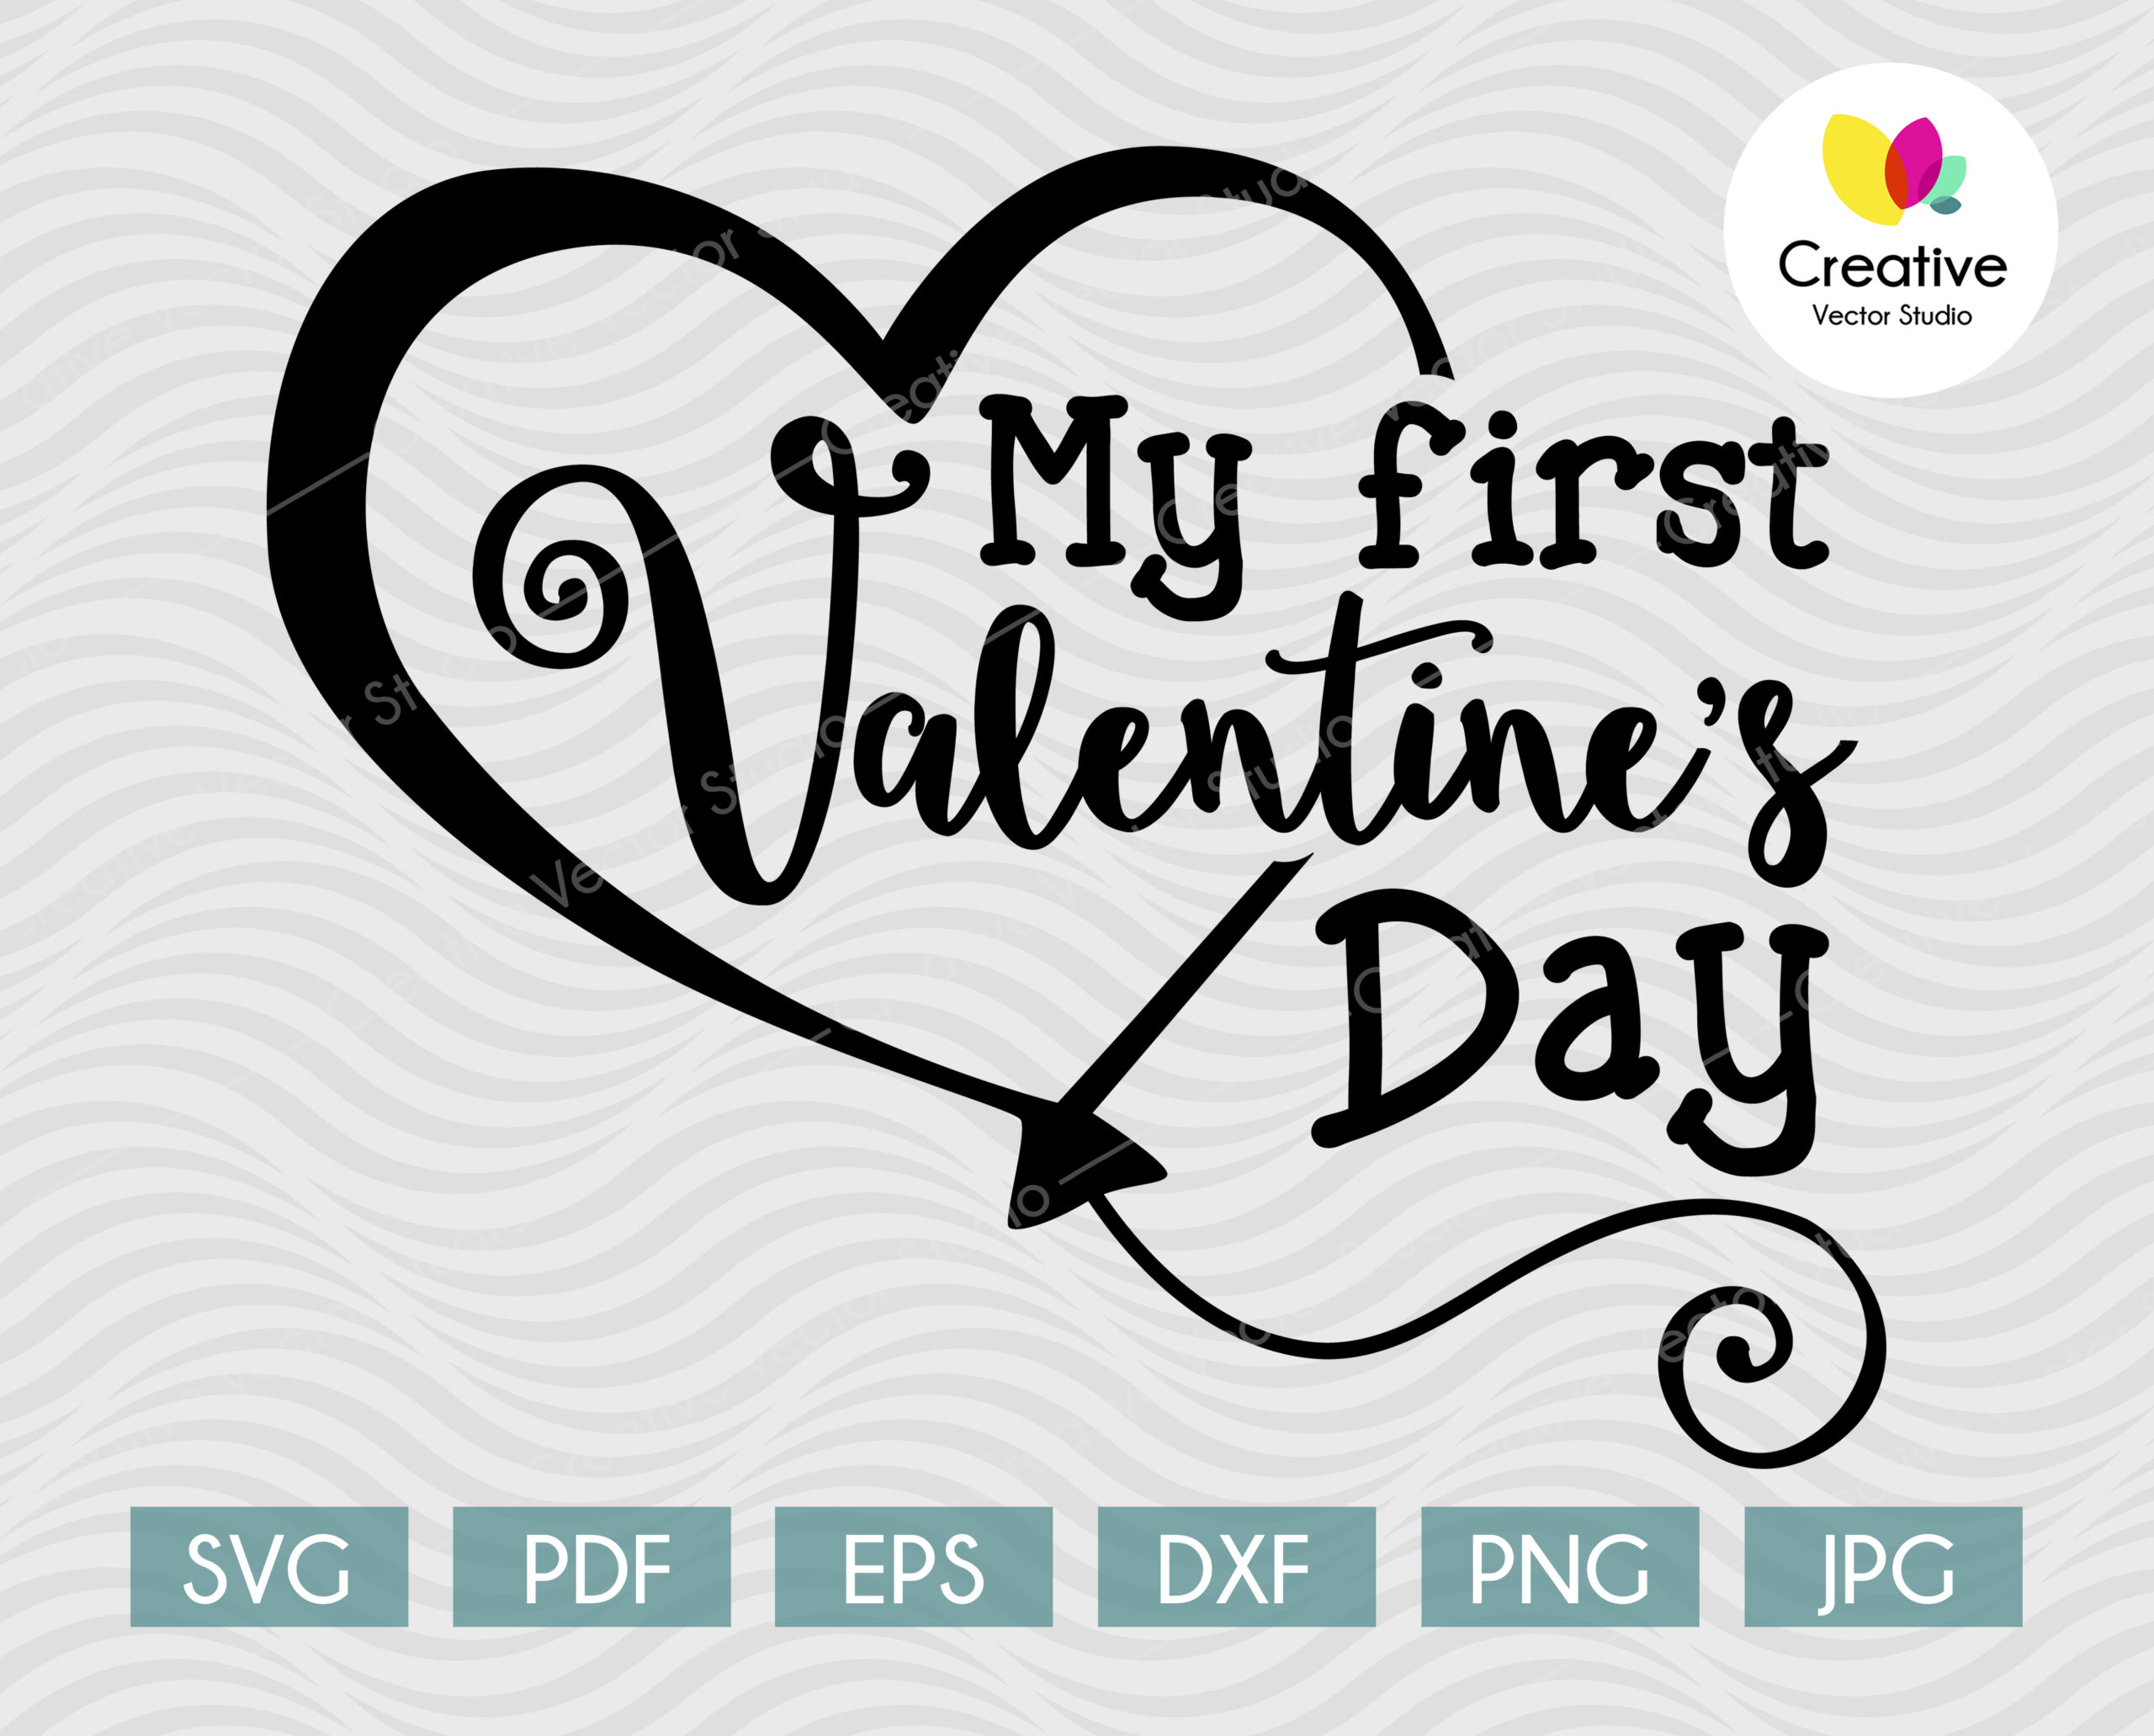 My First Valentine's Day SVG - Creative Vector Studio